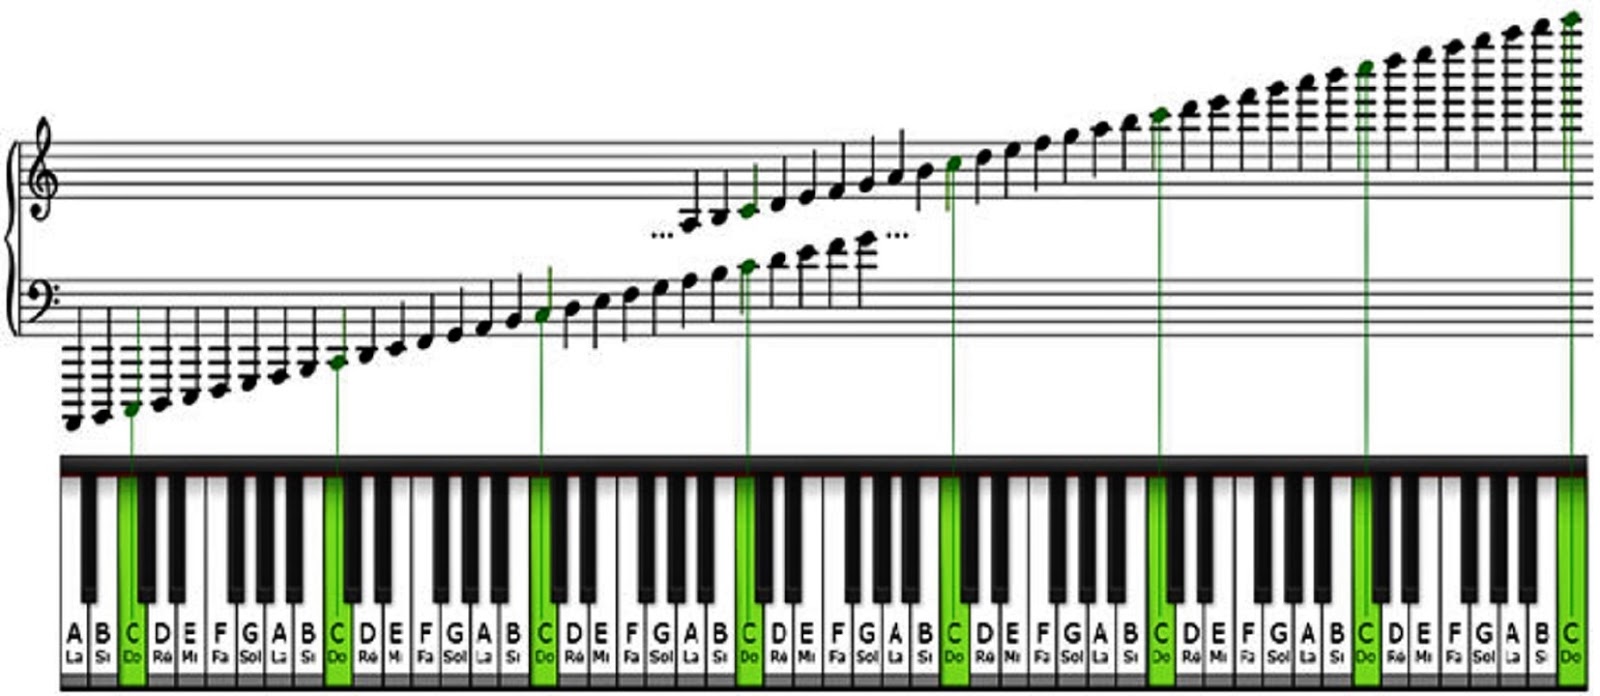 Как узнать какая мелодия играет. Ноты на синтезаторе 61 клавиша. Диапазон фортепиано октавы. Расположение нот на клавишах синтезатора 61 клавиша. Расположение нот на синтезаторе 61 клавиша.